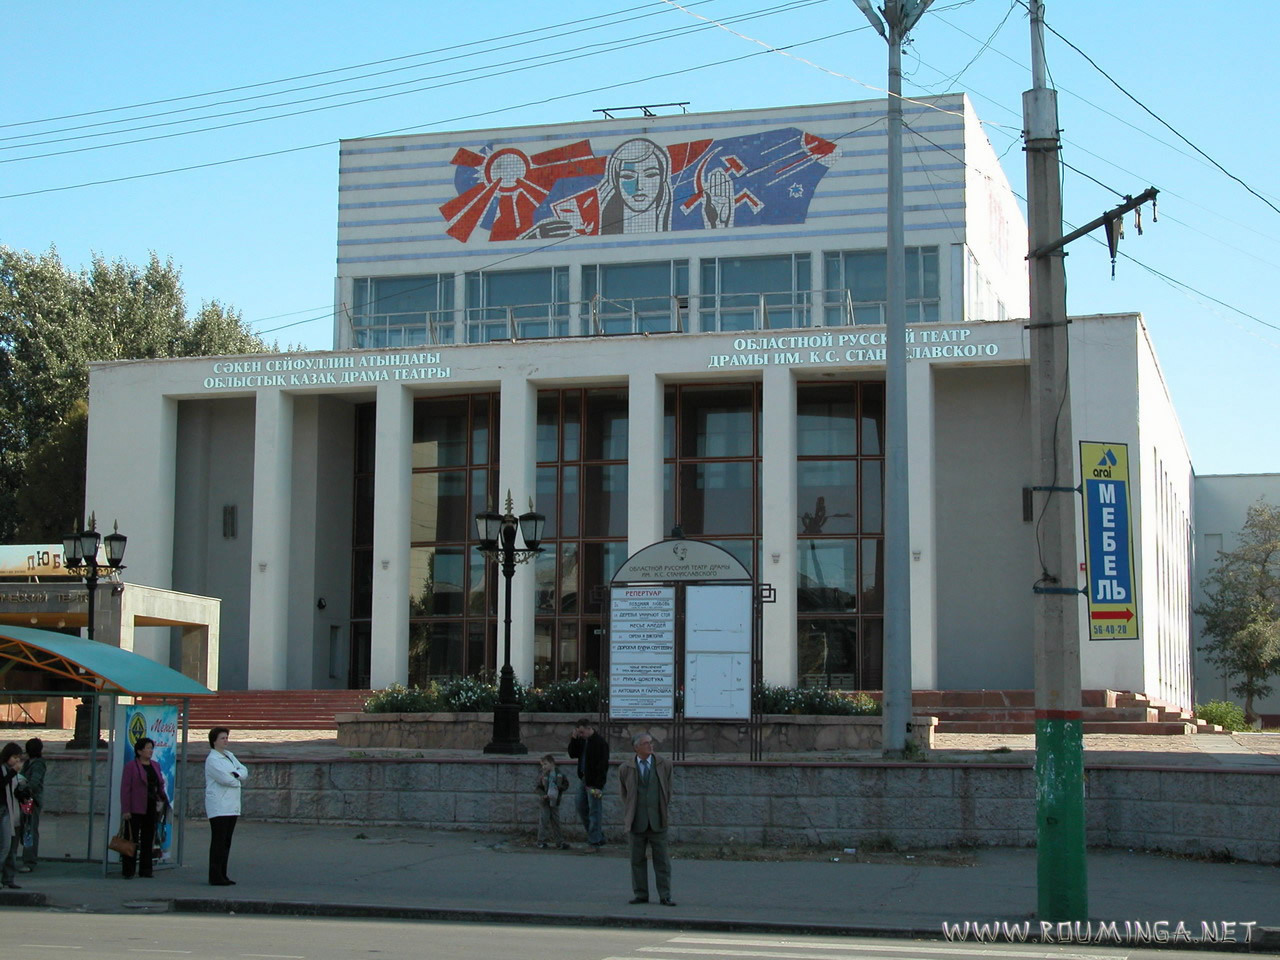 театр станиславского караганда